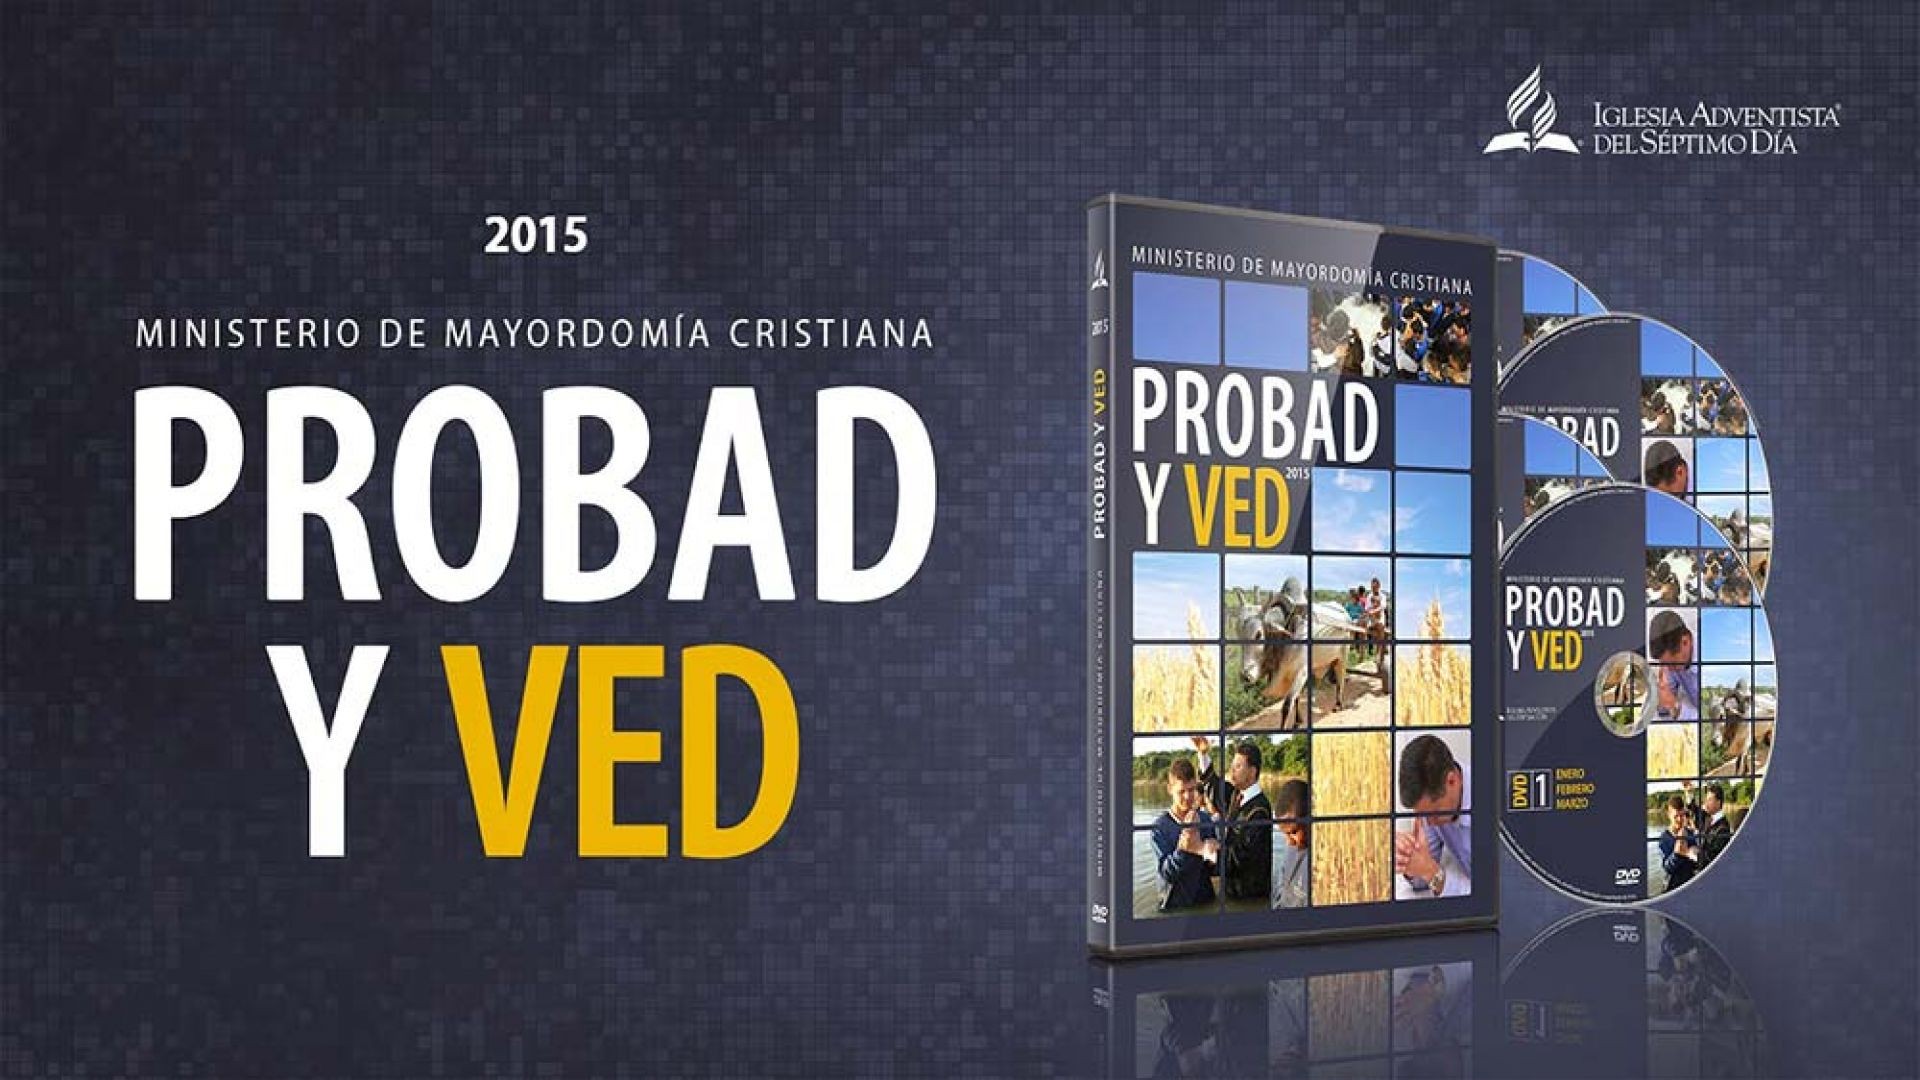 17/oct. Descuento del diezmo – Probad y Ved 2015